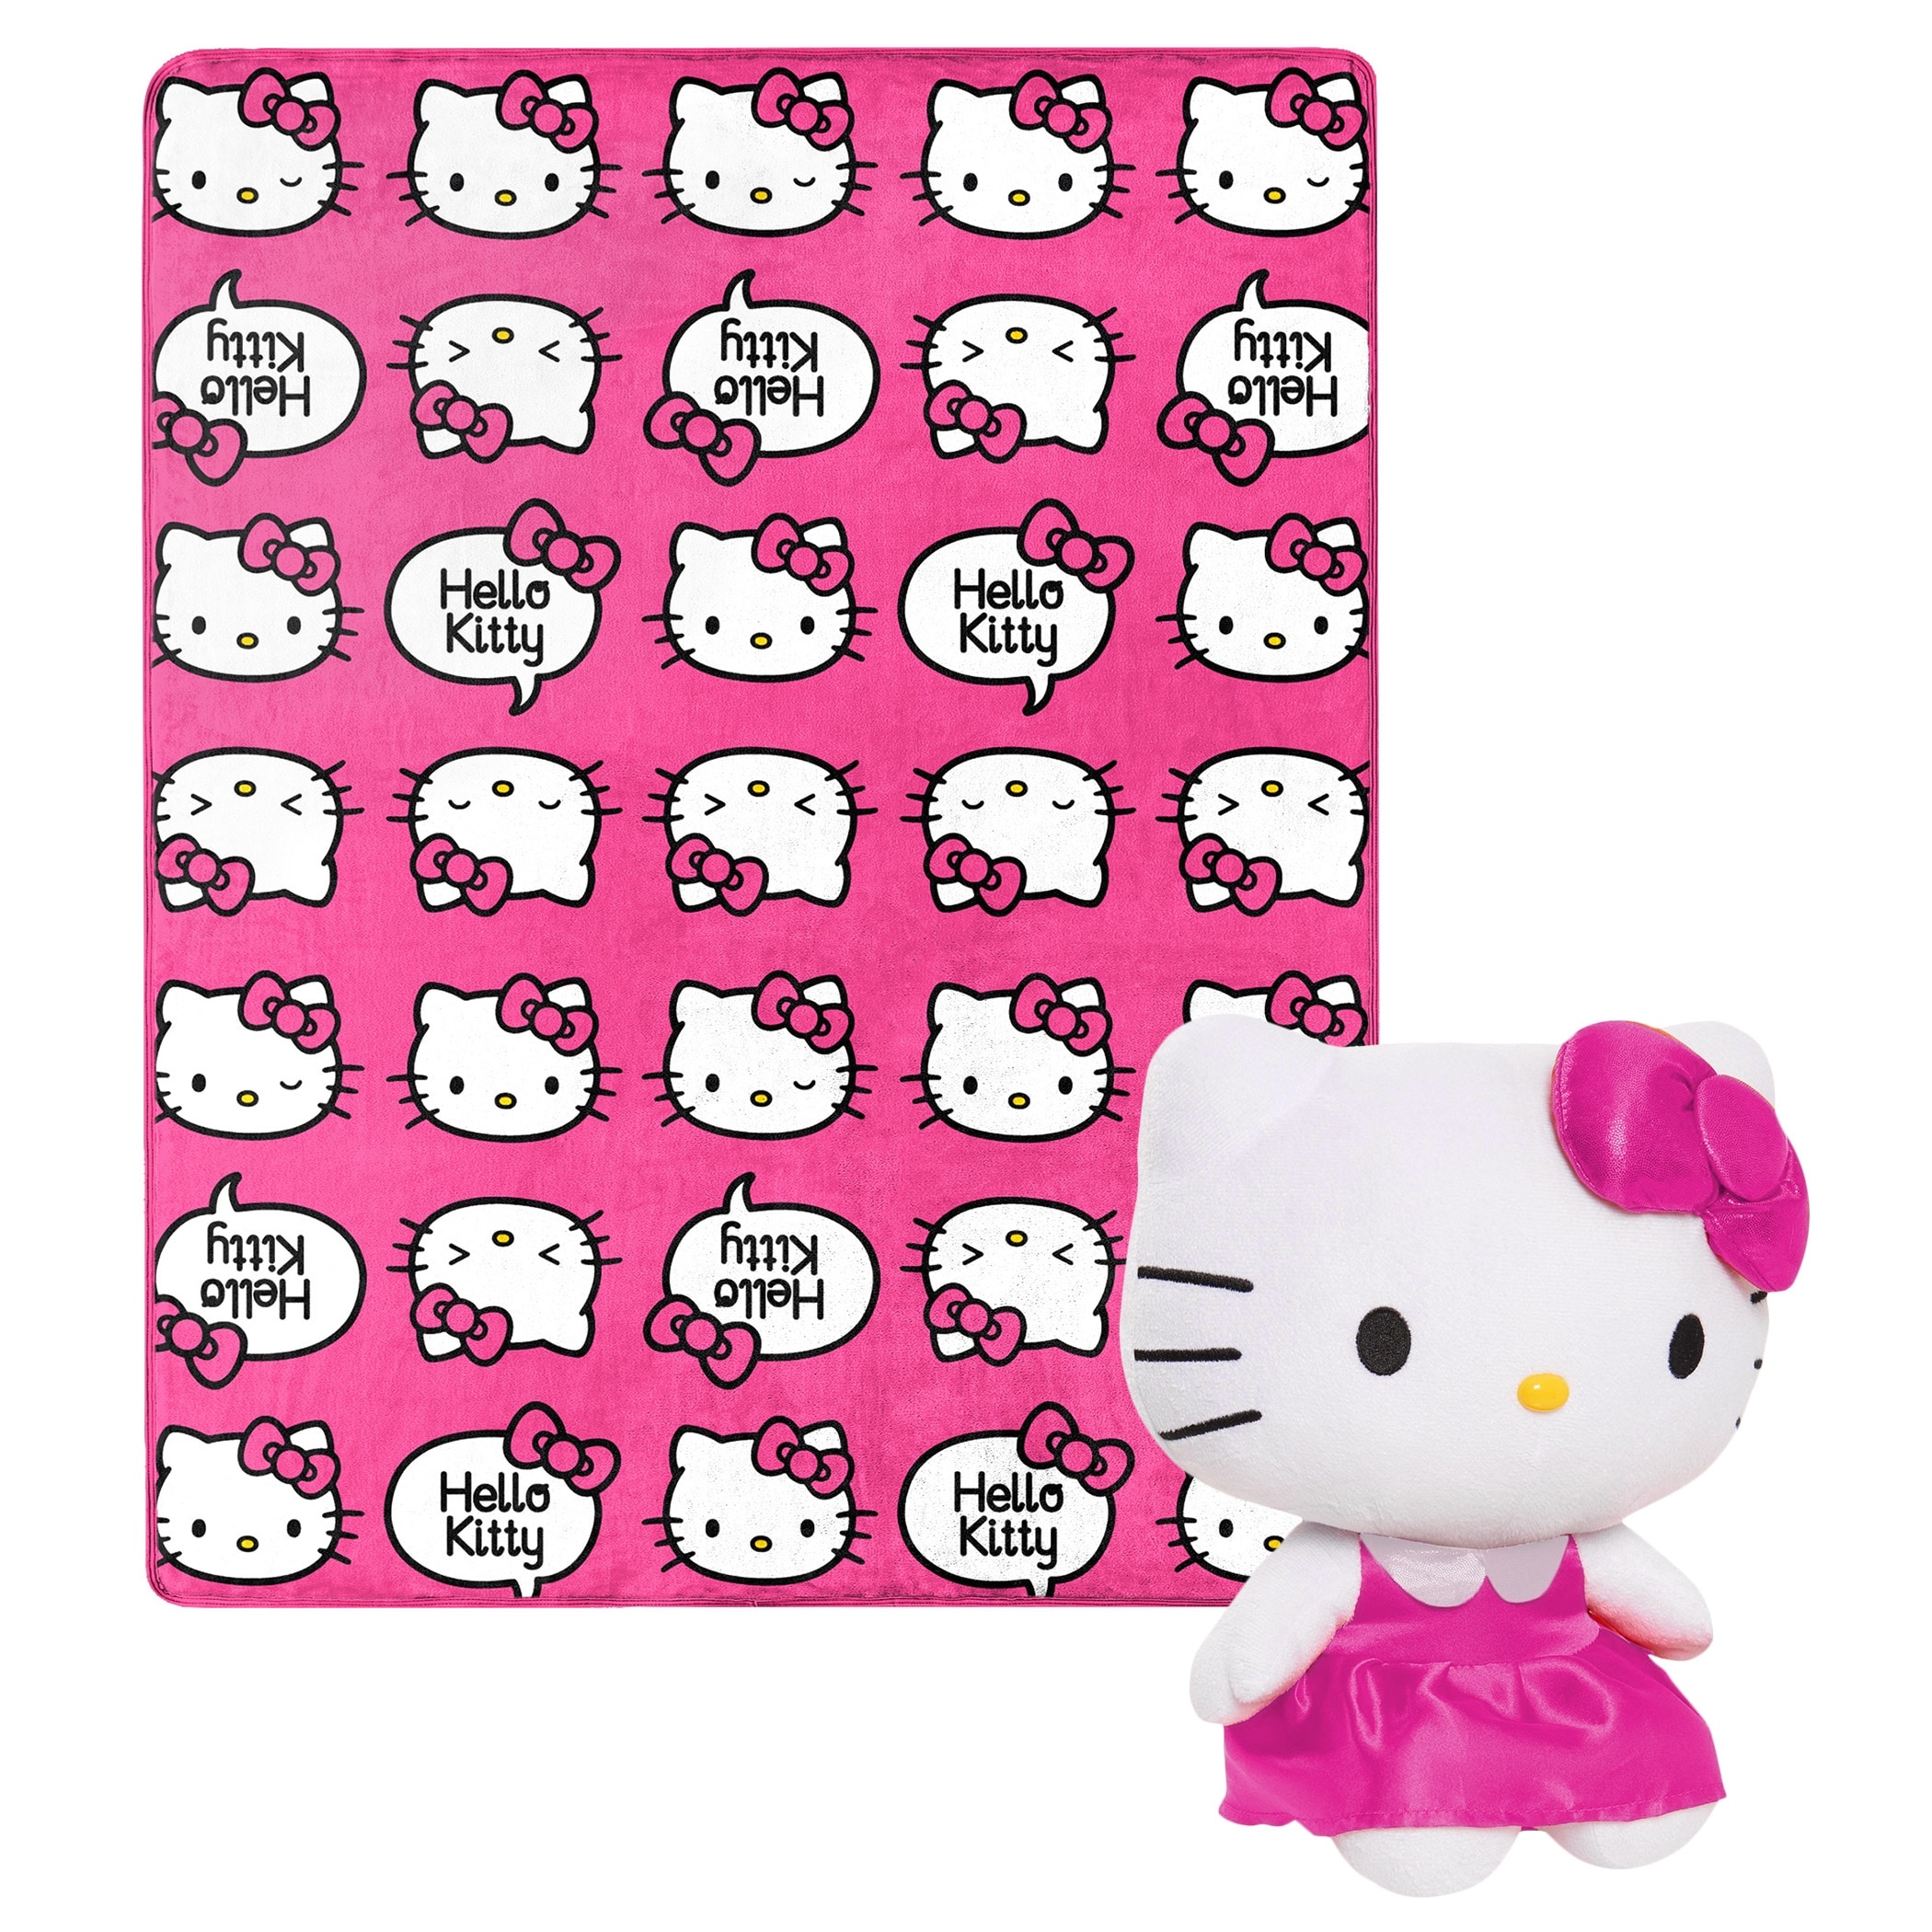 Hello Kitty Egyptian Cotton Pink Bedding Duvet Sheet Set Queen